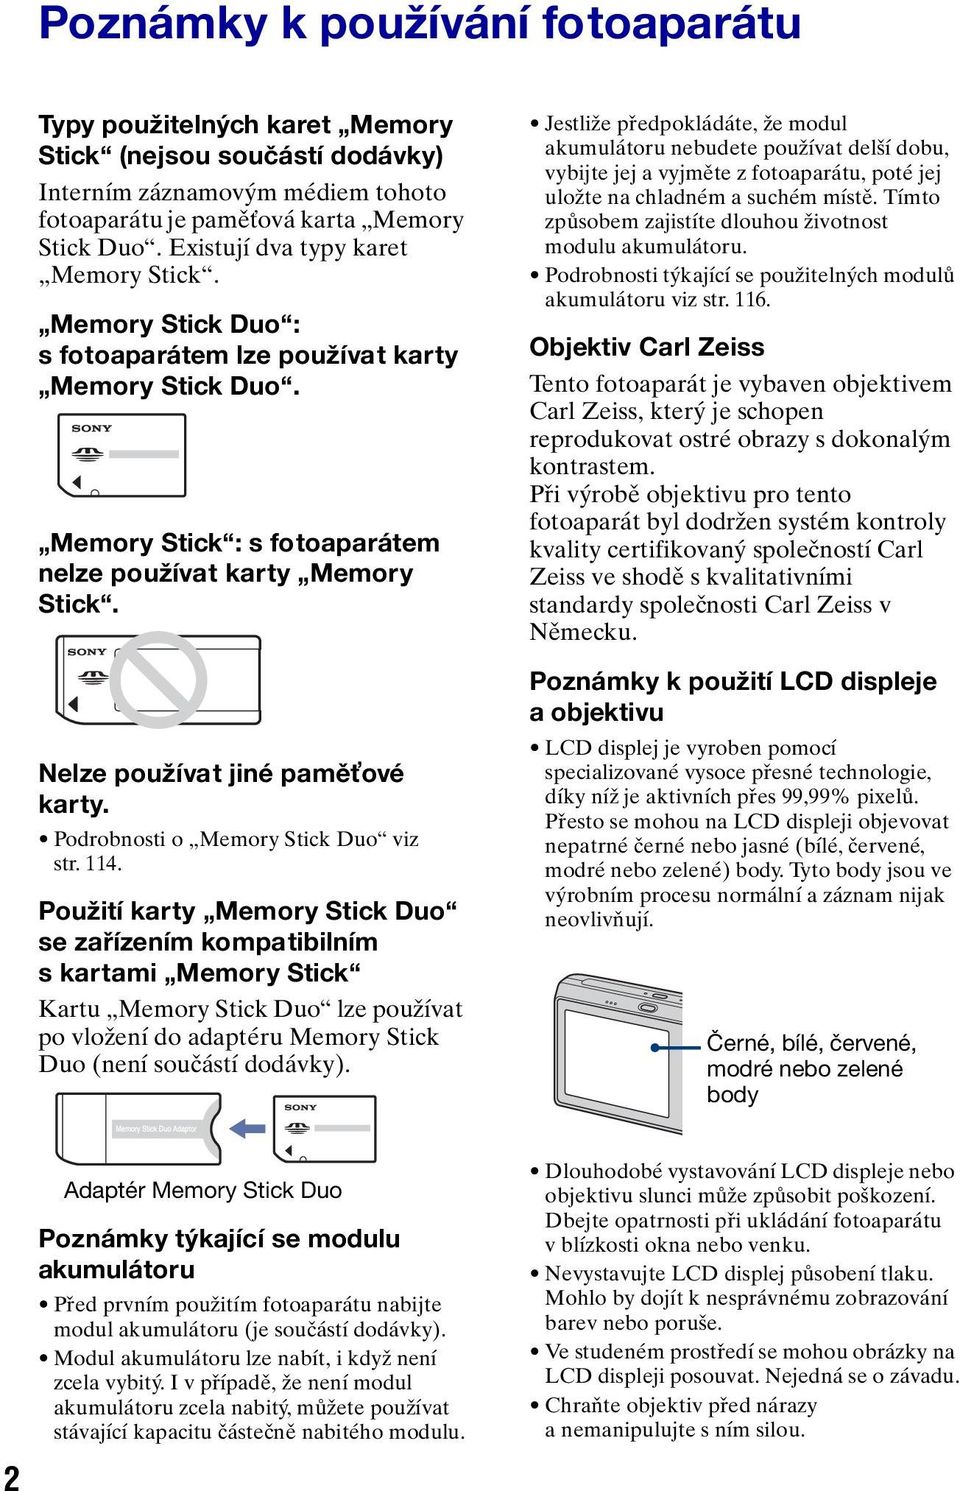 Nelze používat jiné paměťové karty. Podrobnosti o Memory Stick Duo viz str. 114.